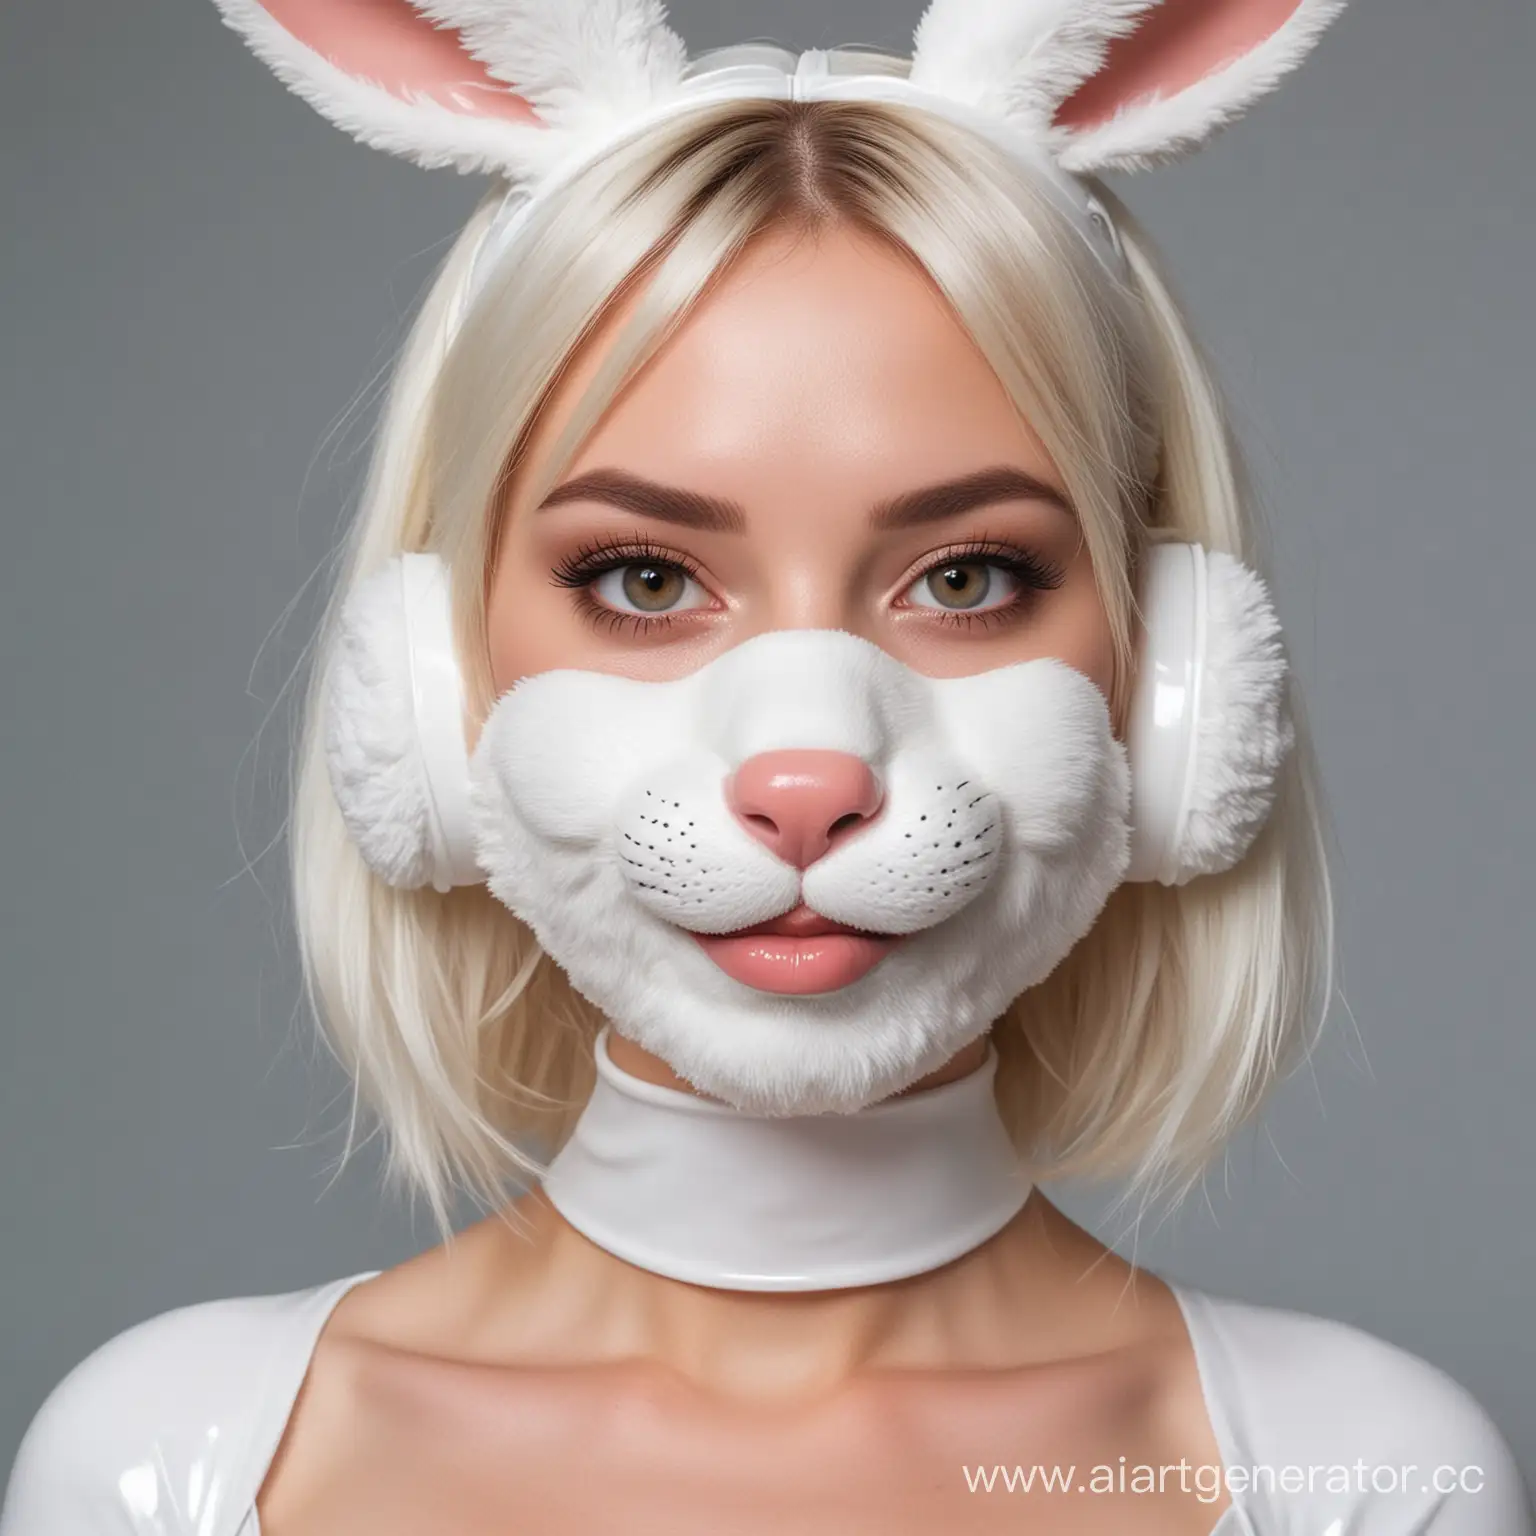 Латексная девушка фурри кролик с белой латексной кожей с мордой кролика вместо лица изображение сделать в стилистике диснеевских мультфильмов